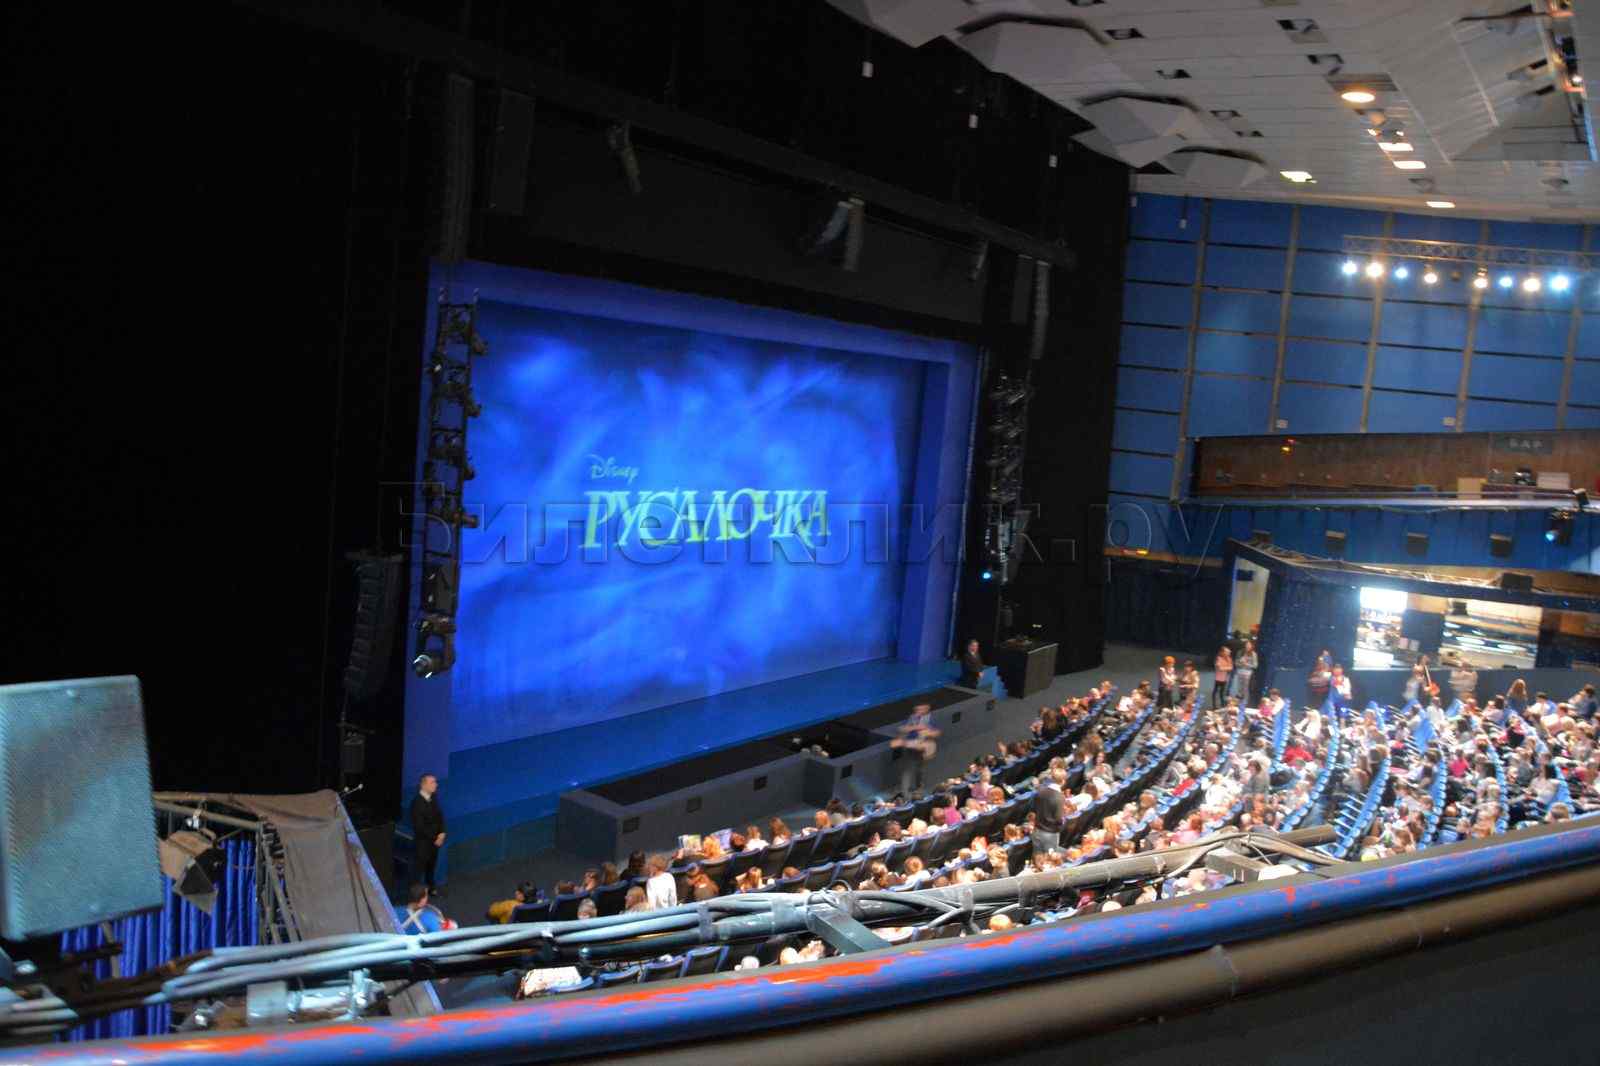 Театр мюзикла на пушкинской официальный сайт